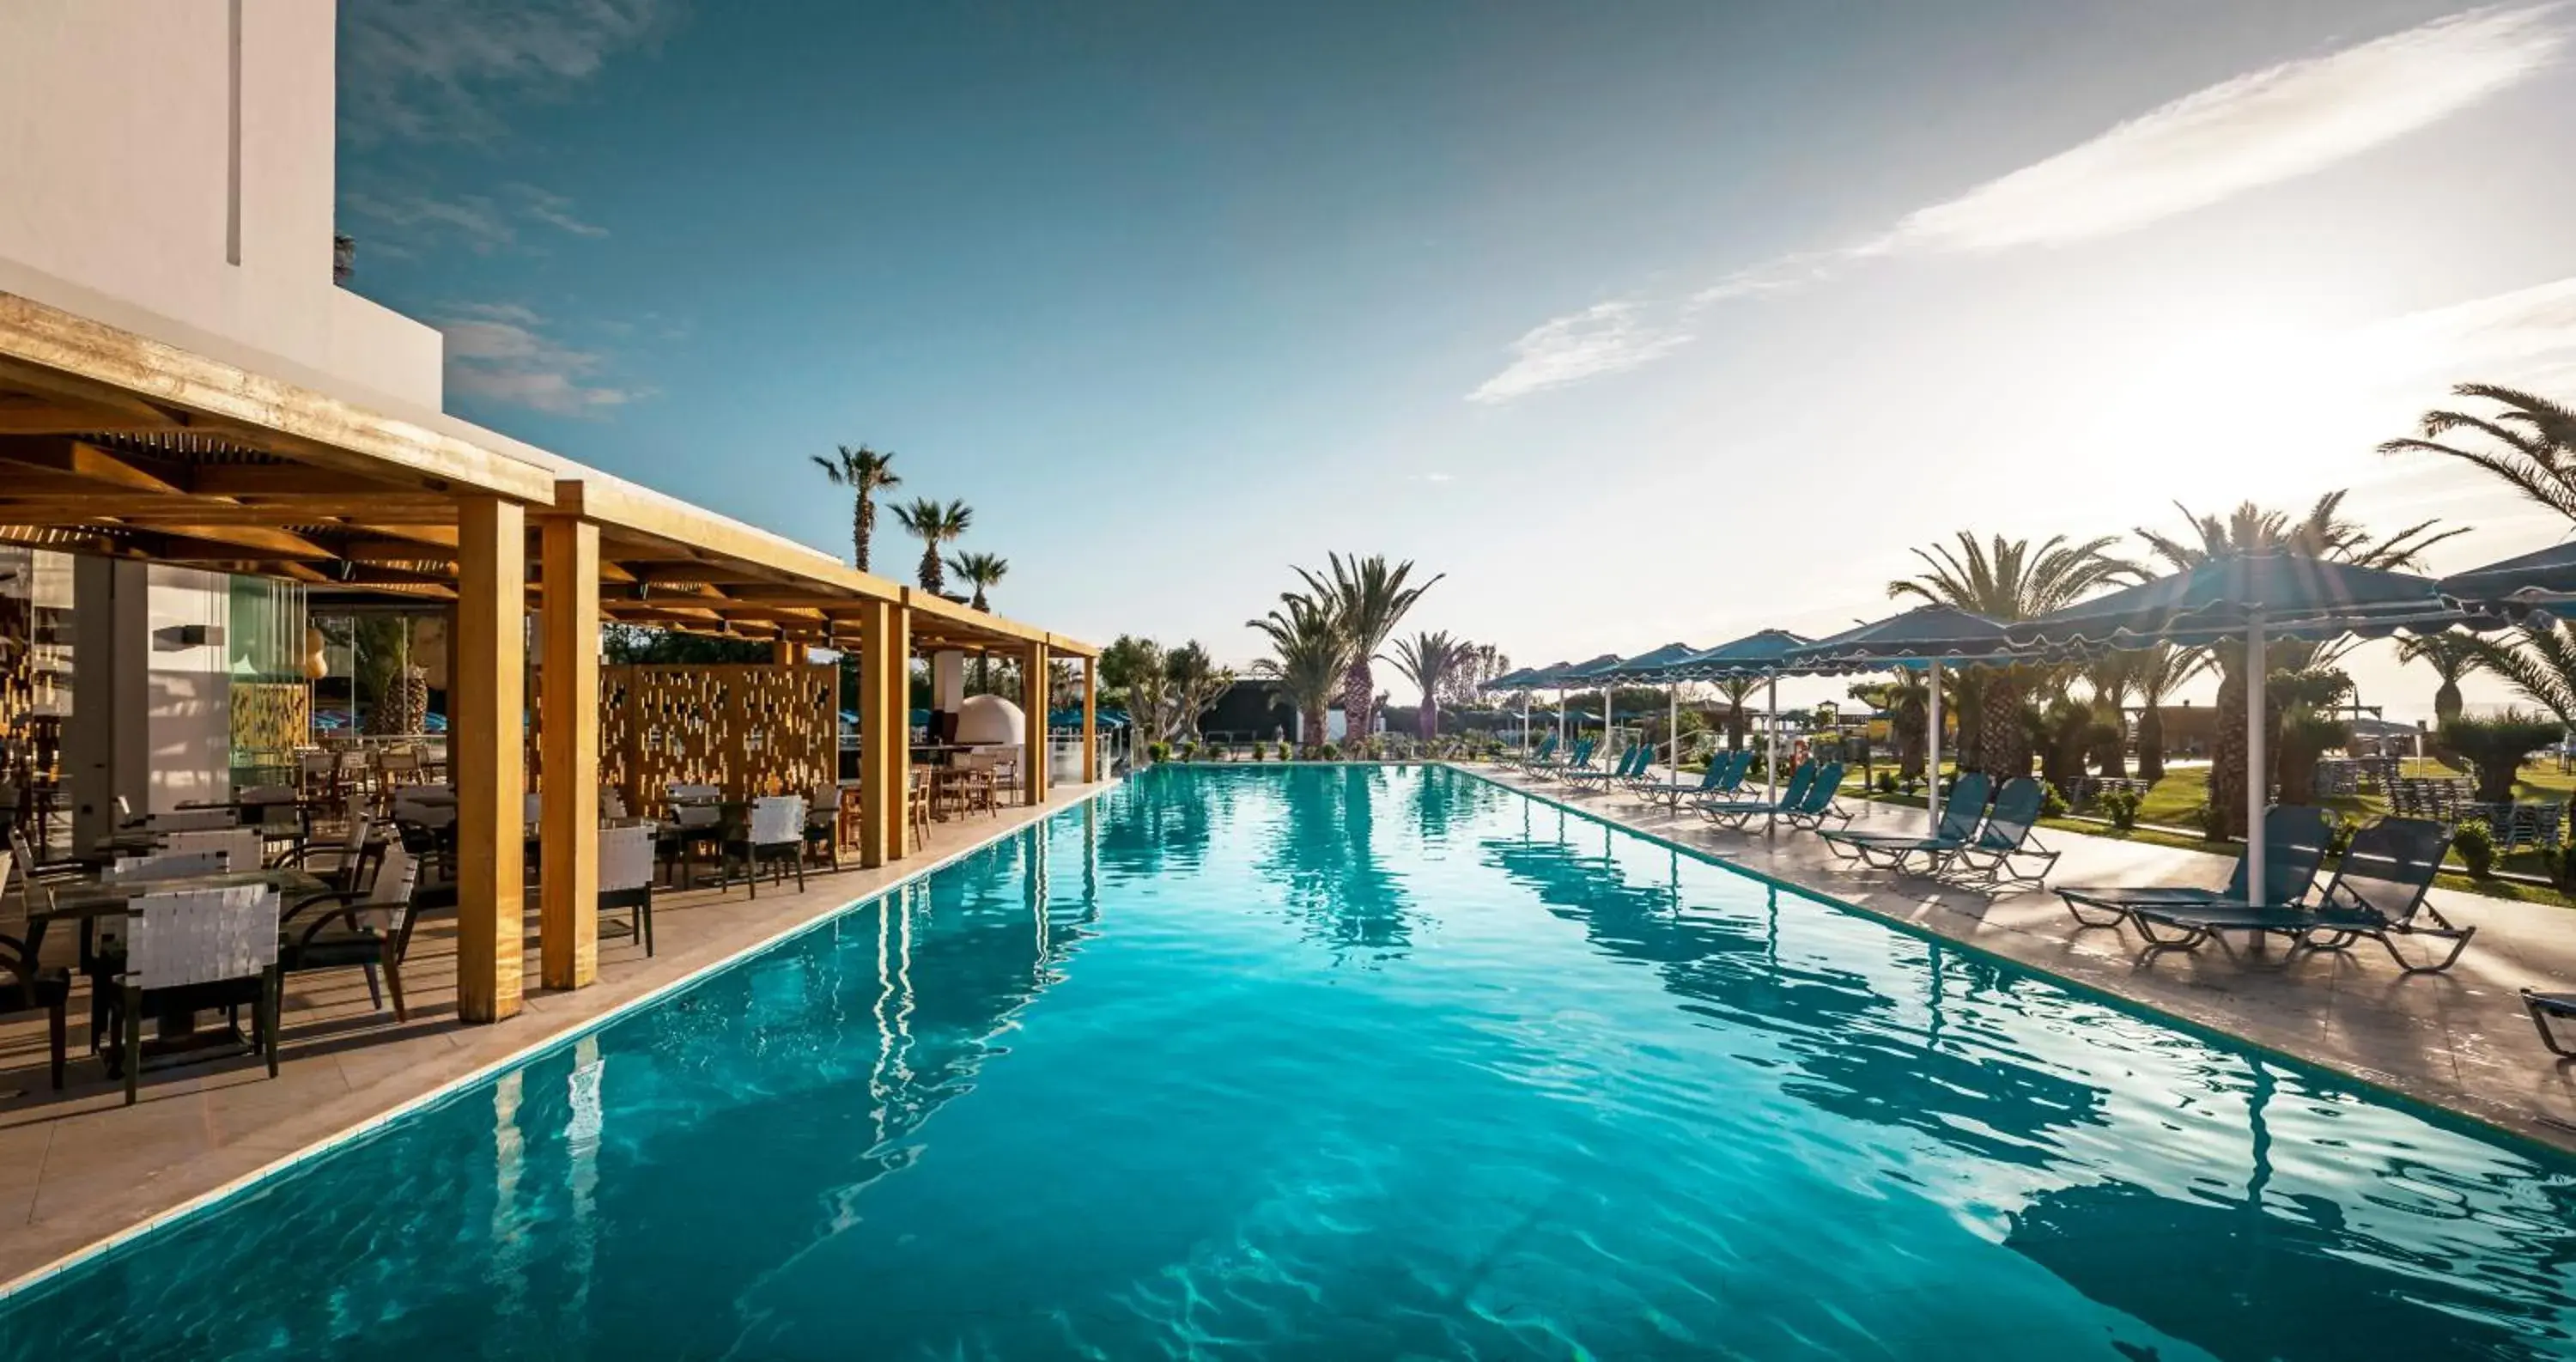 Restaurant/places to eat, Swimming Pool in Mitsis Faliraki